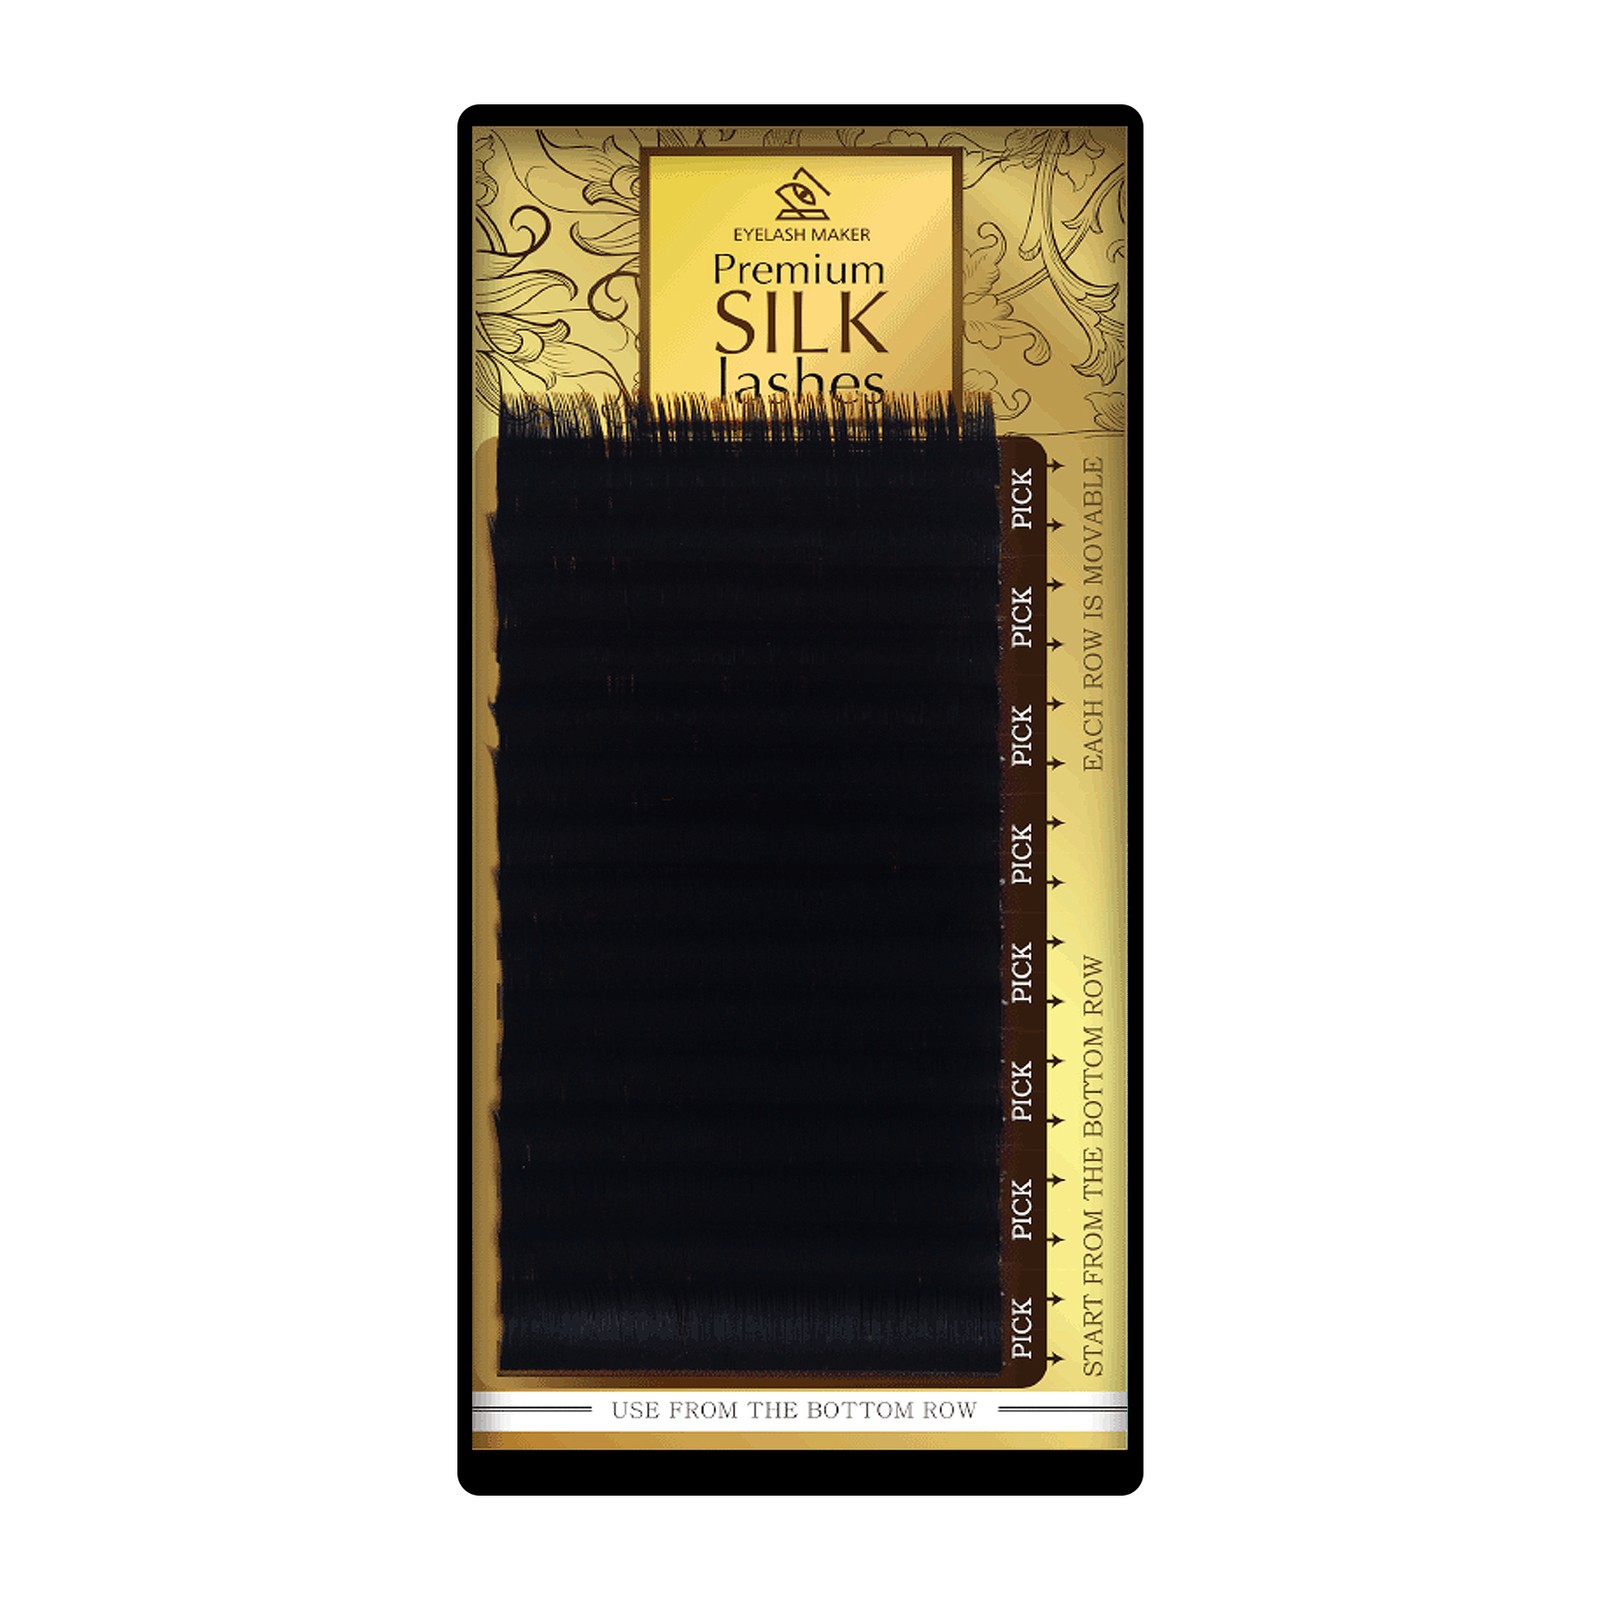 Premium Silk Lashes - 14mm, C, 0.12mm